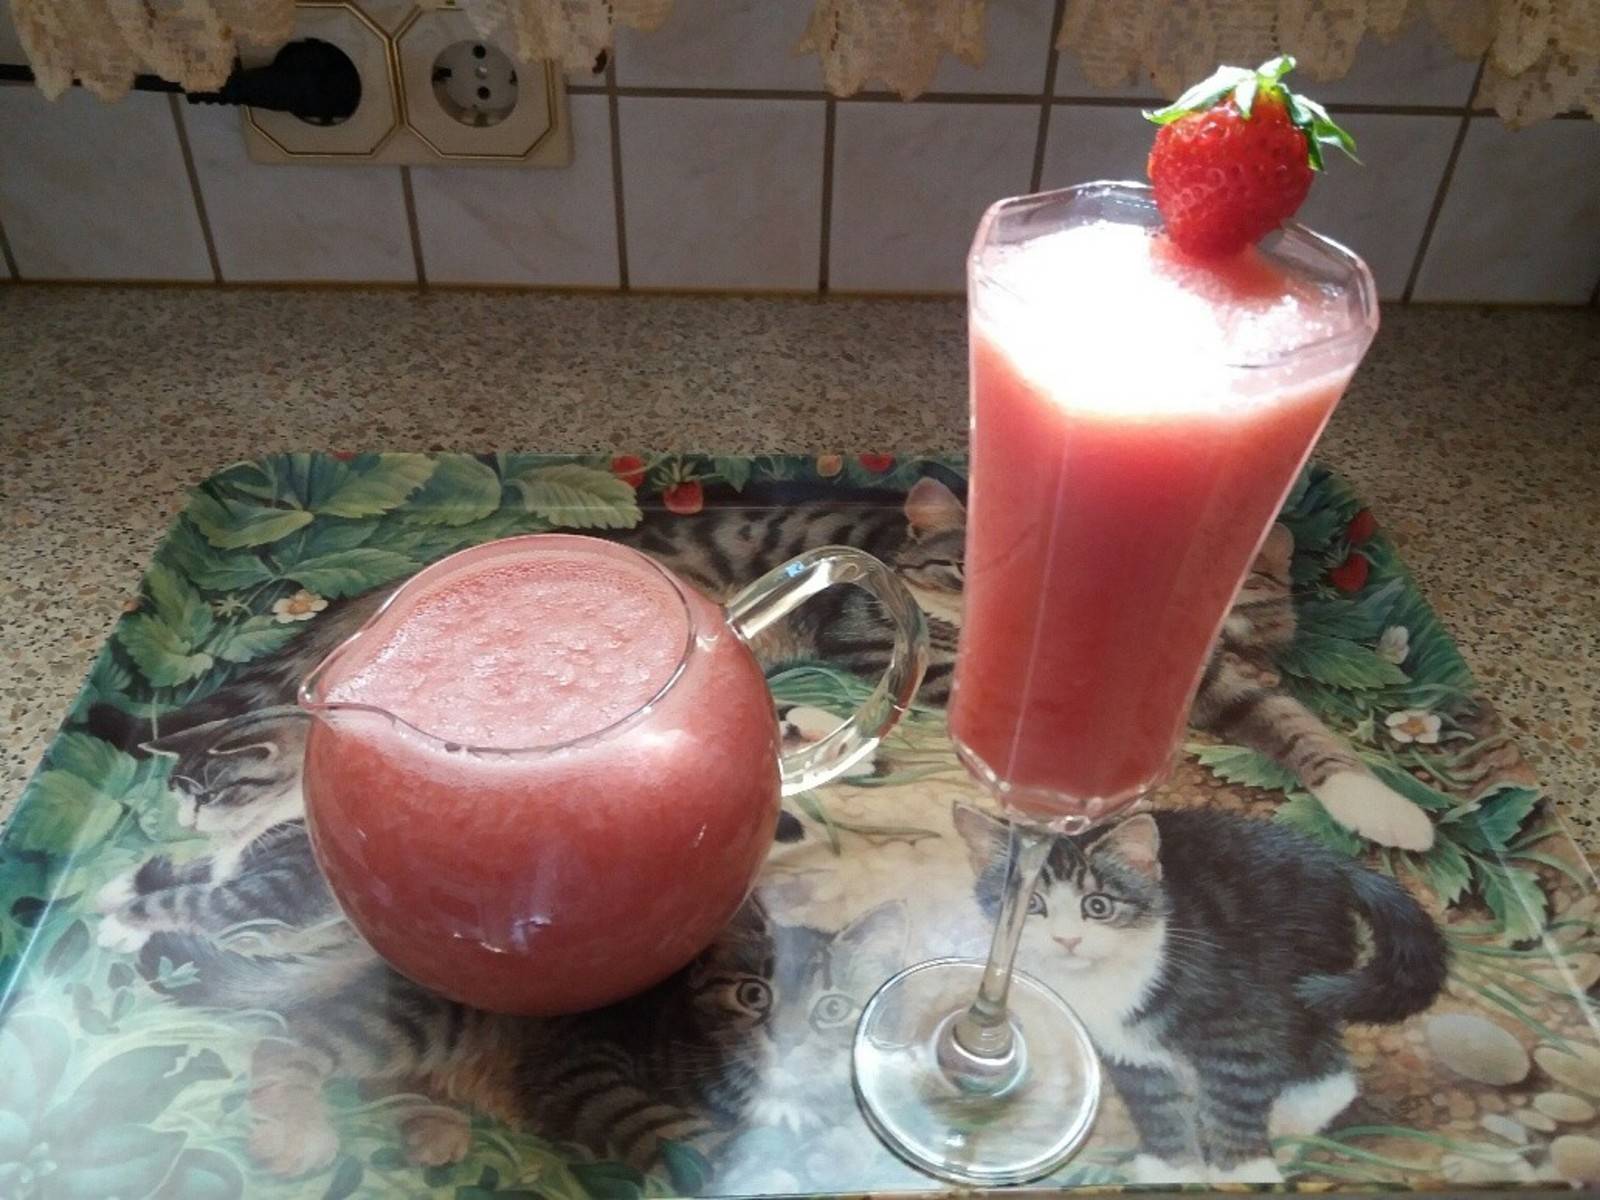 Erfrischender Erdbeer-Wassermelonen-Drink